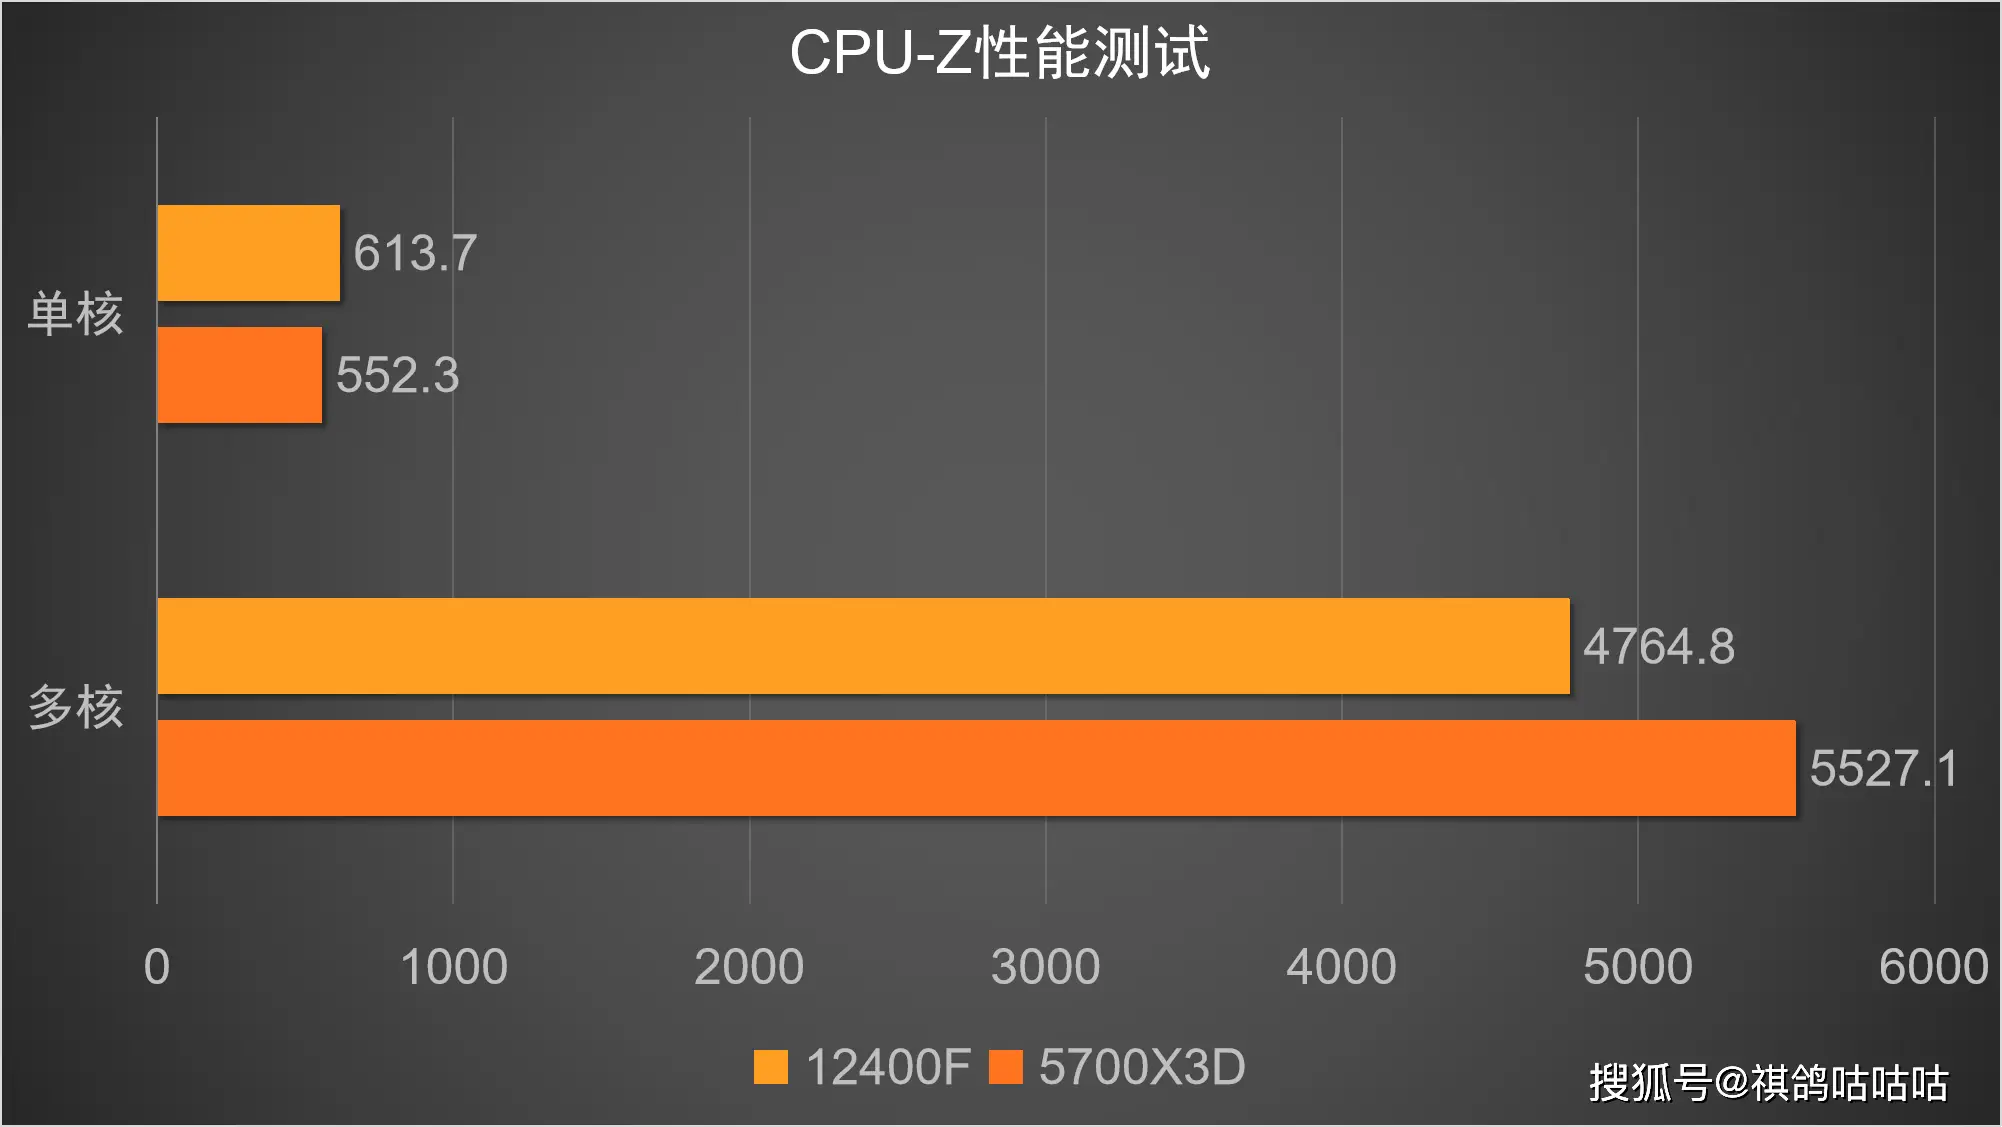 赋予 B85 主板新活力，实现至 DDR4 内存的飞跃升级  第10张